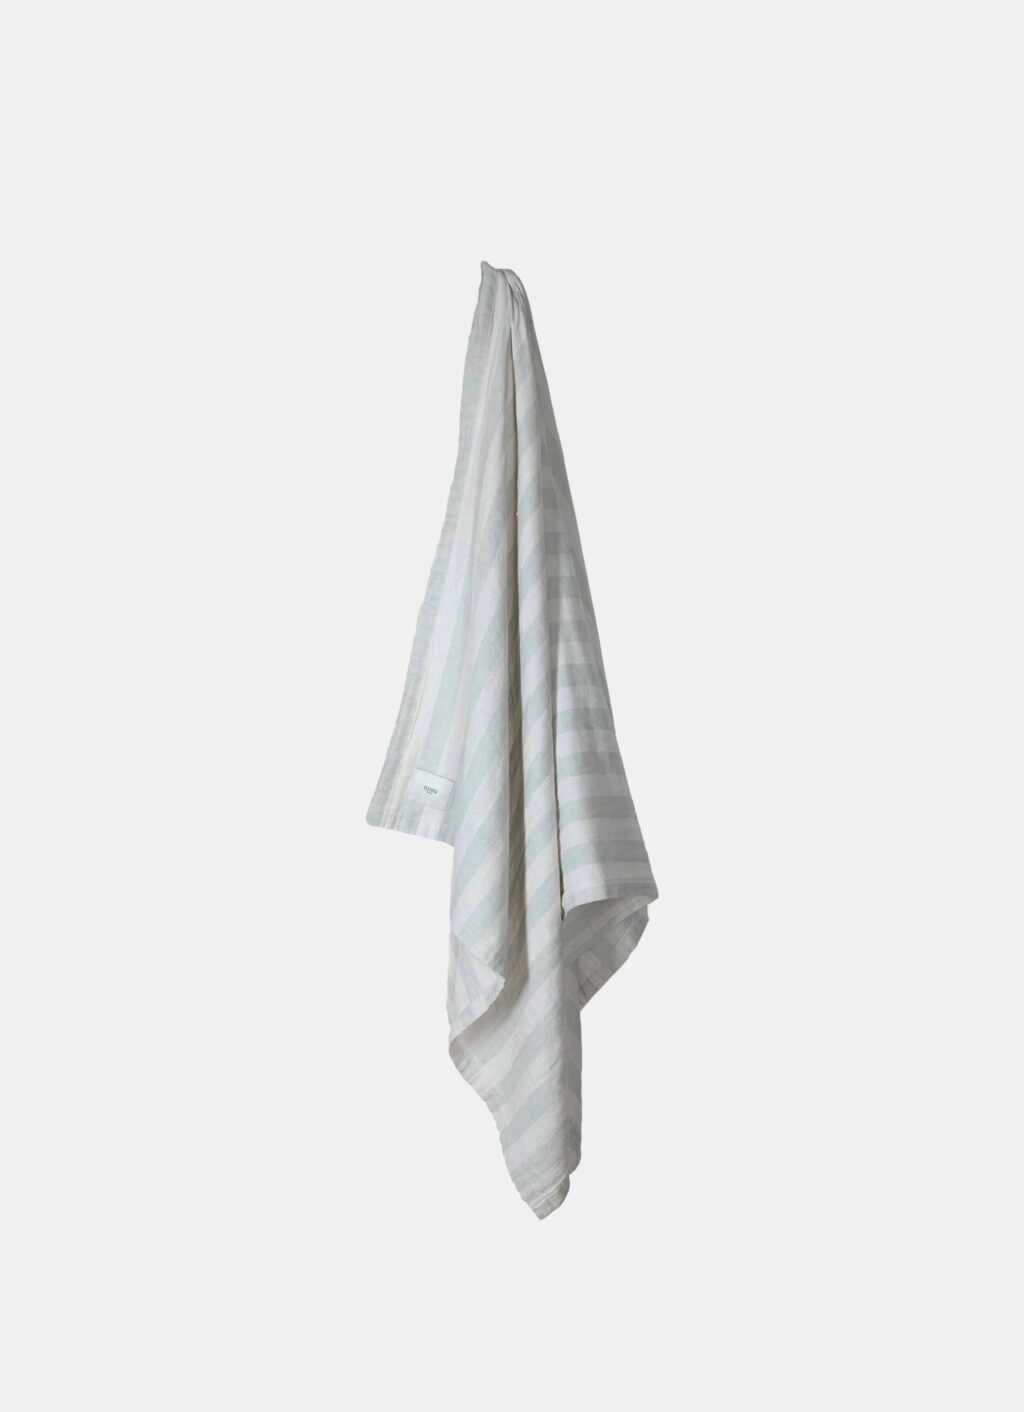 Nimu Roma - Puglia Beach Towel - Ponza - 160x95cm